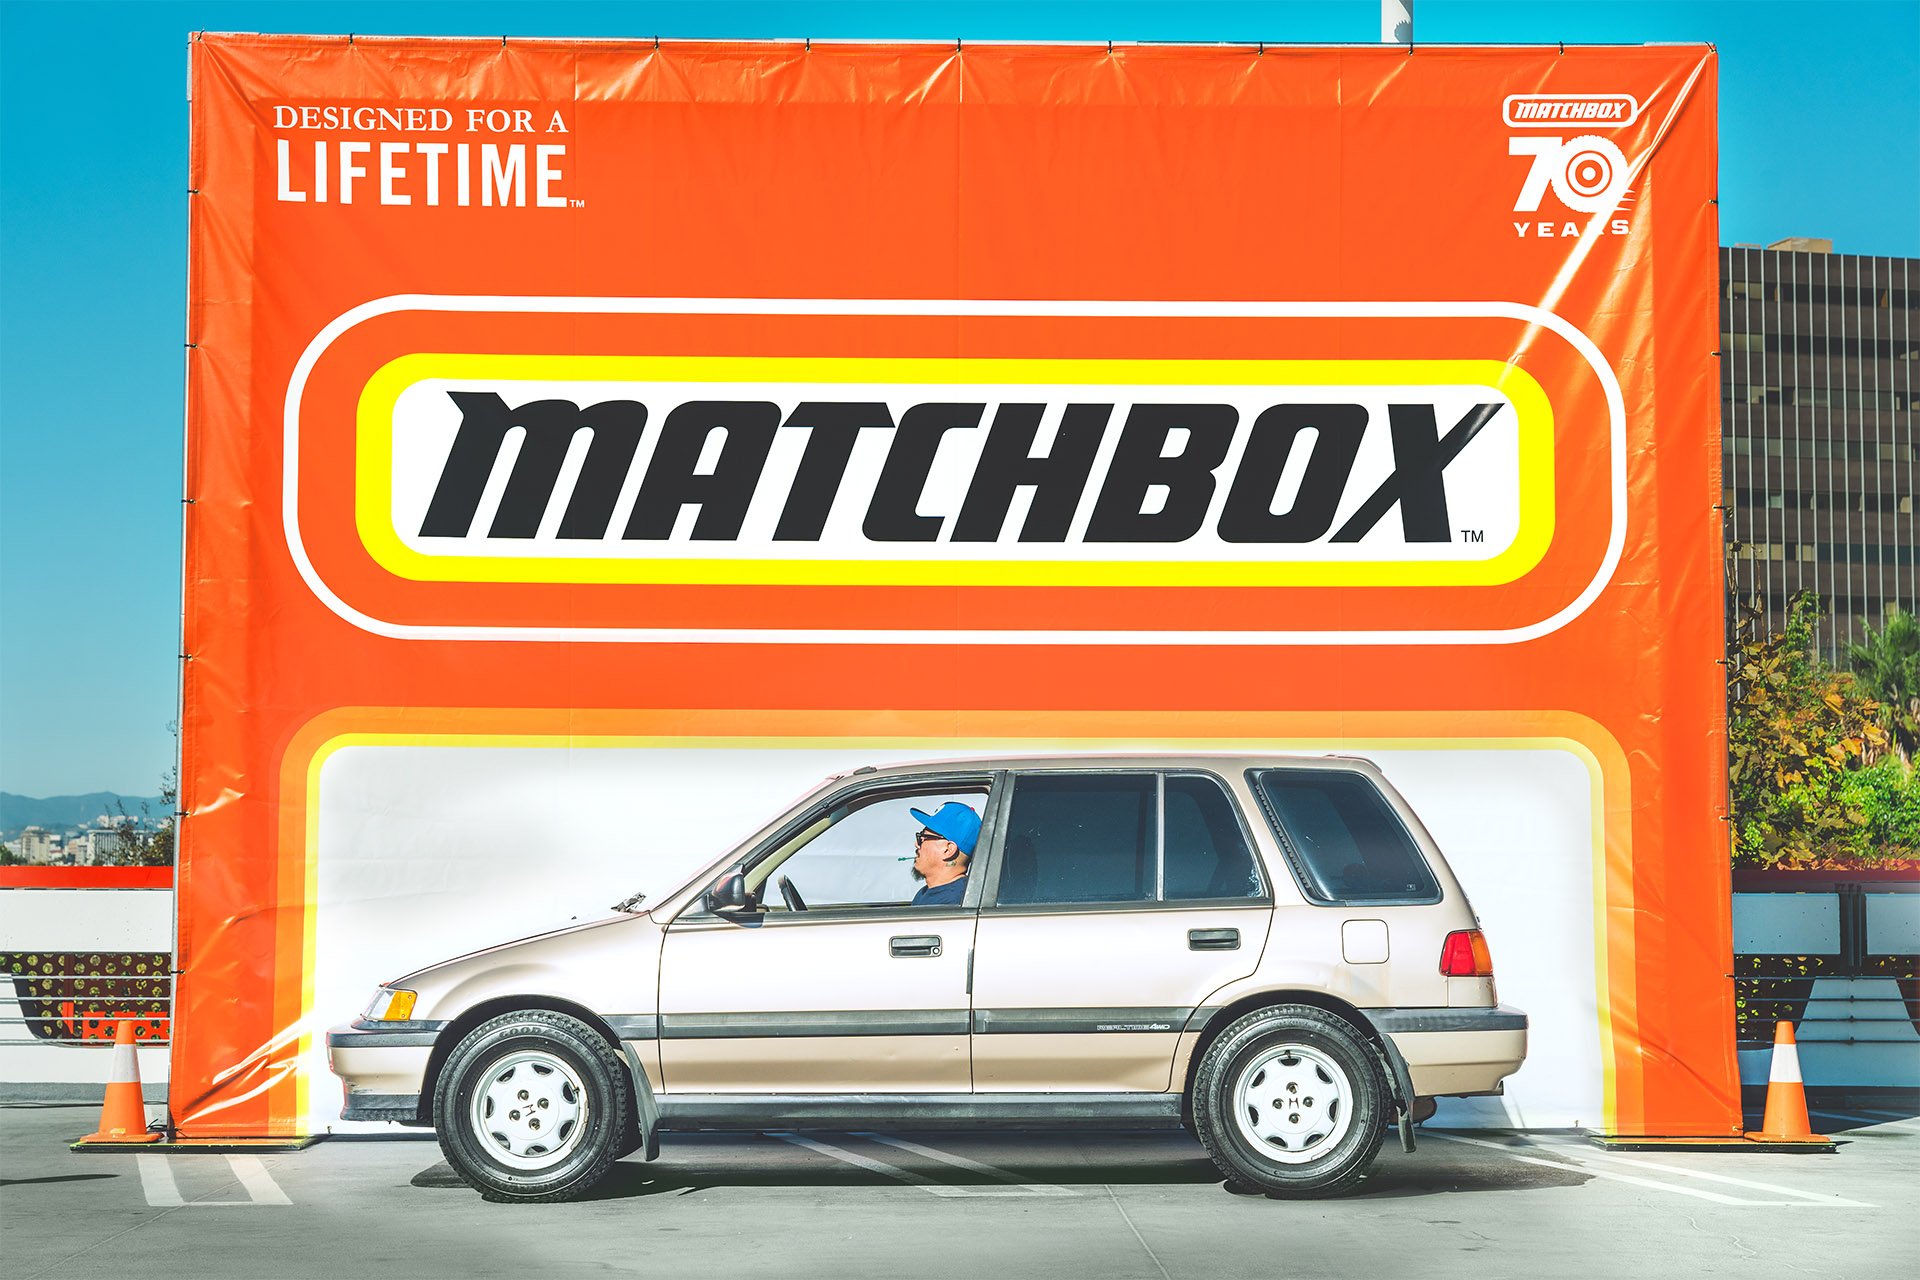 Petersen-Matchbox-Cruise-In-88.jpg